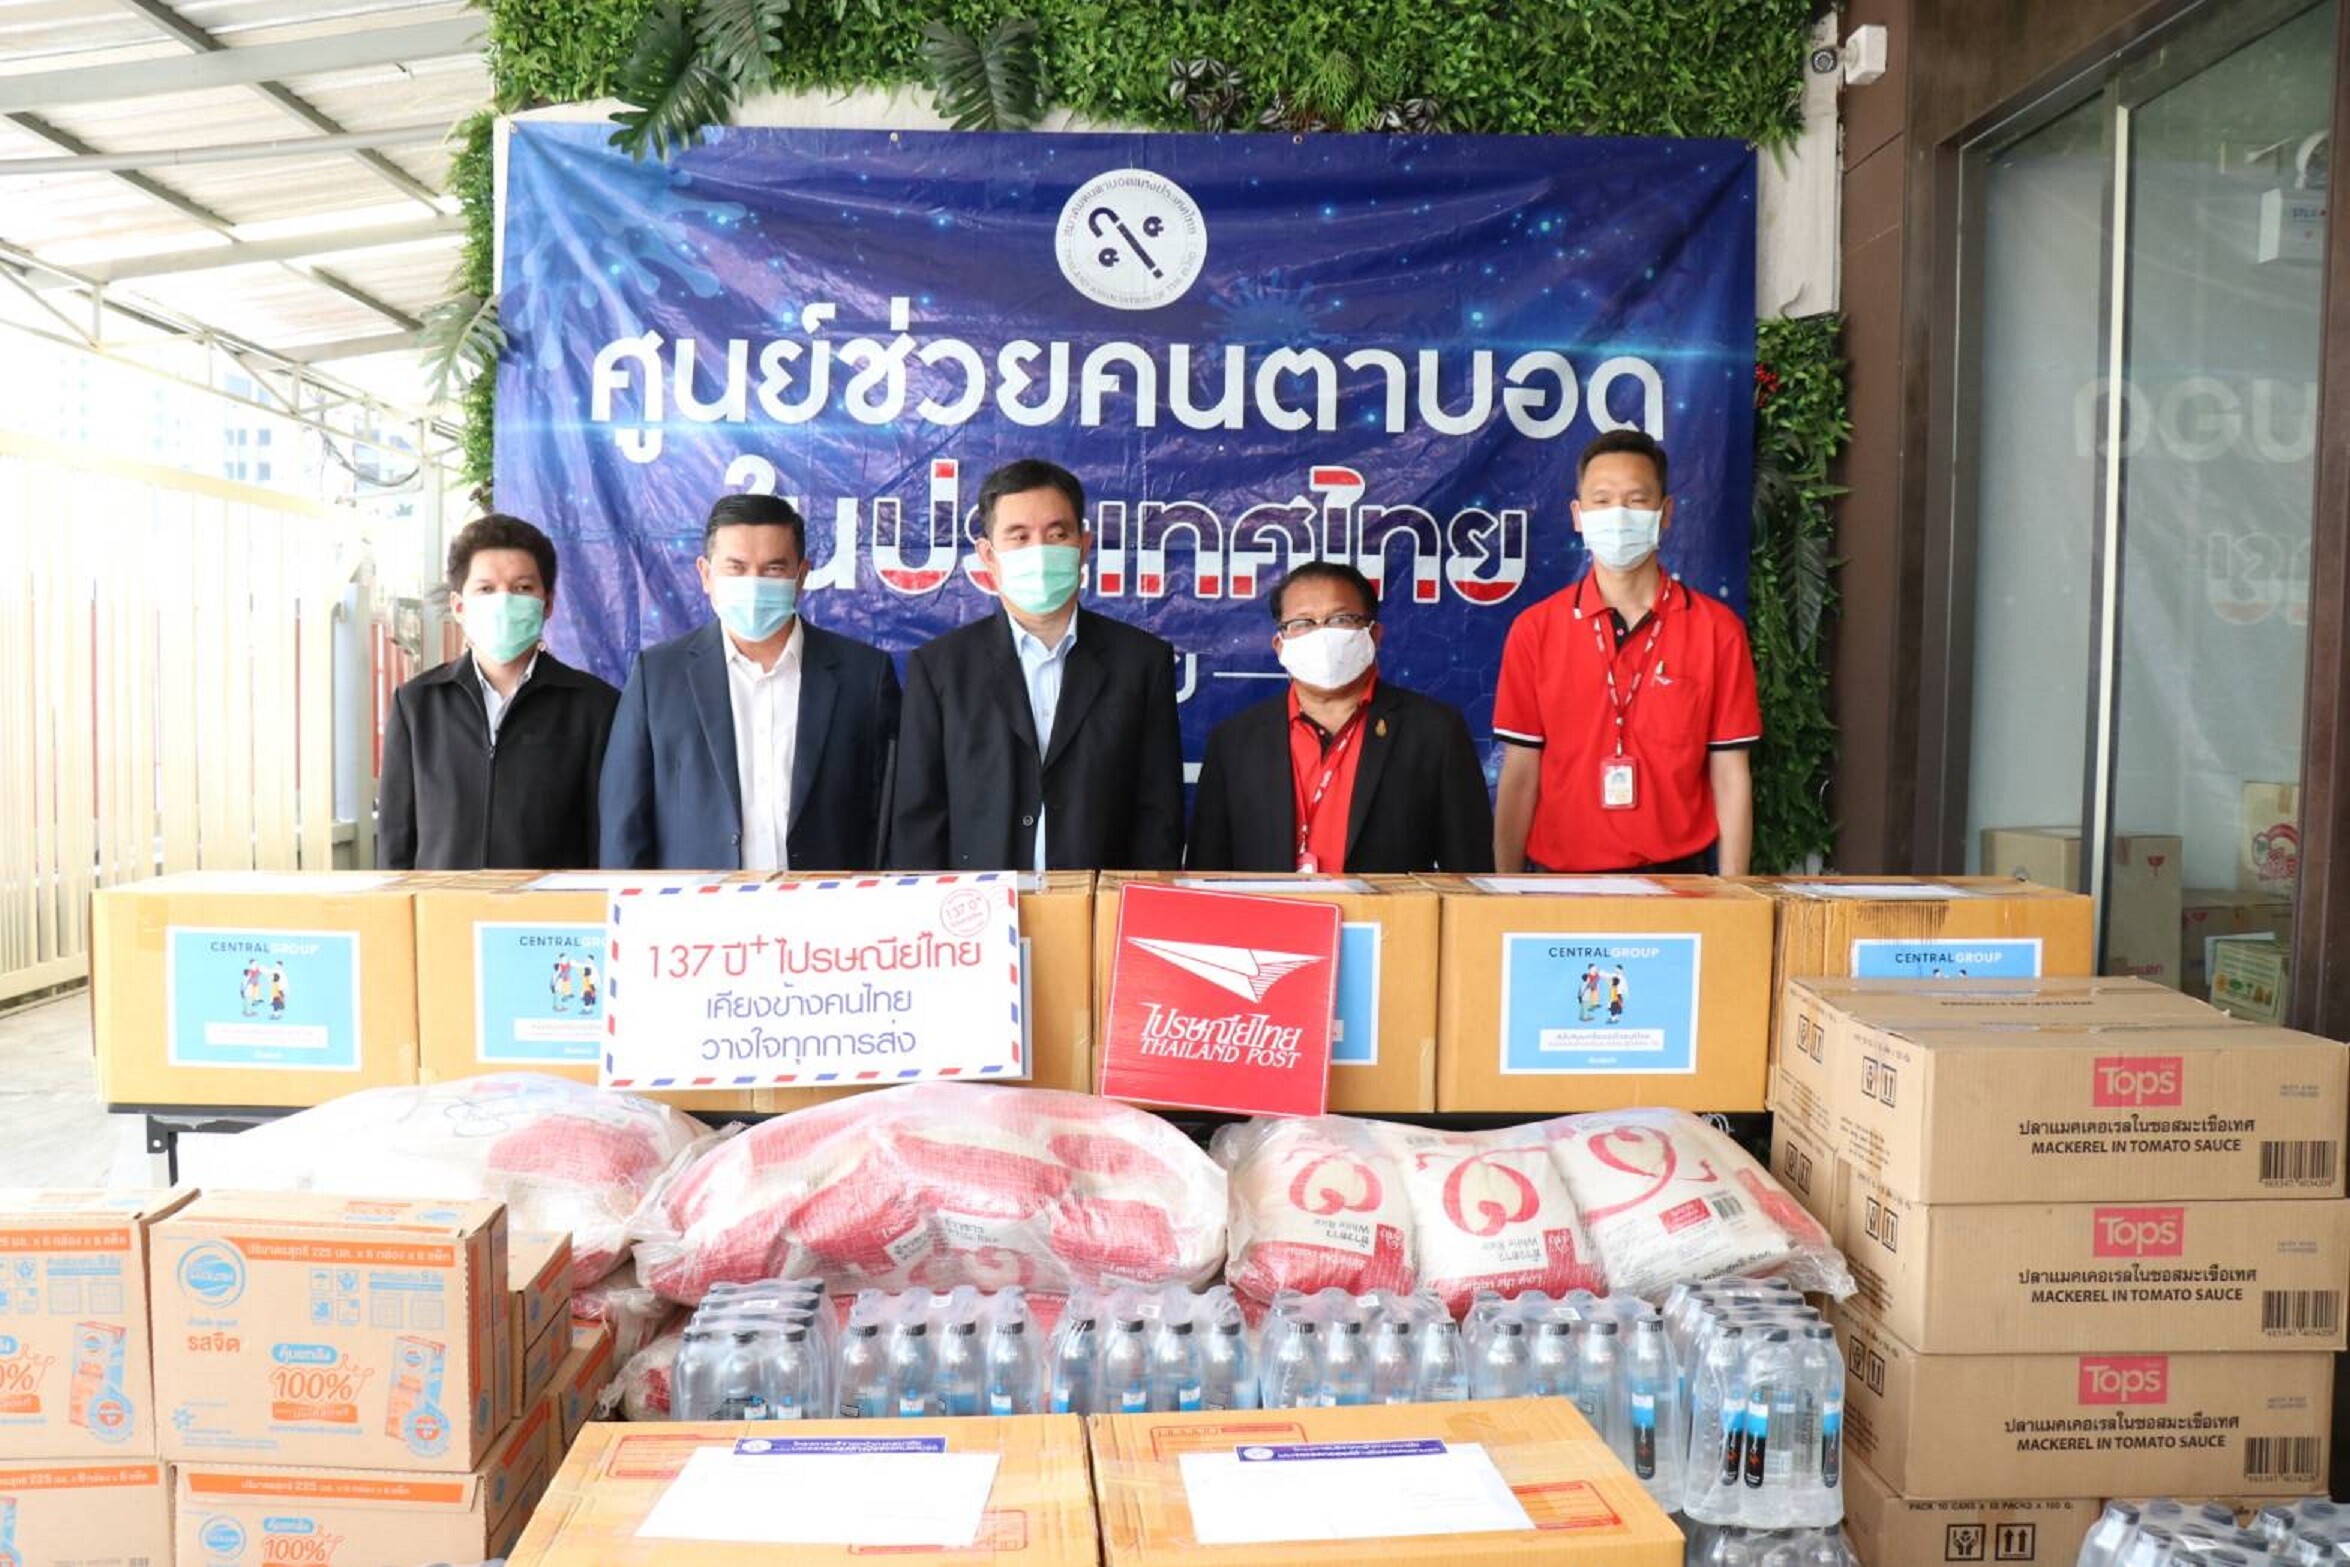 ไปรษณีย์ไทยจัดส่งสิ่งของช่วยสมาคมคนตาบอดฯ